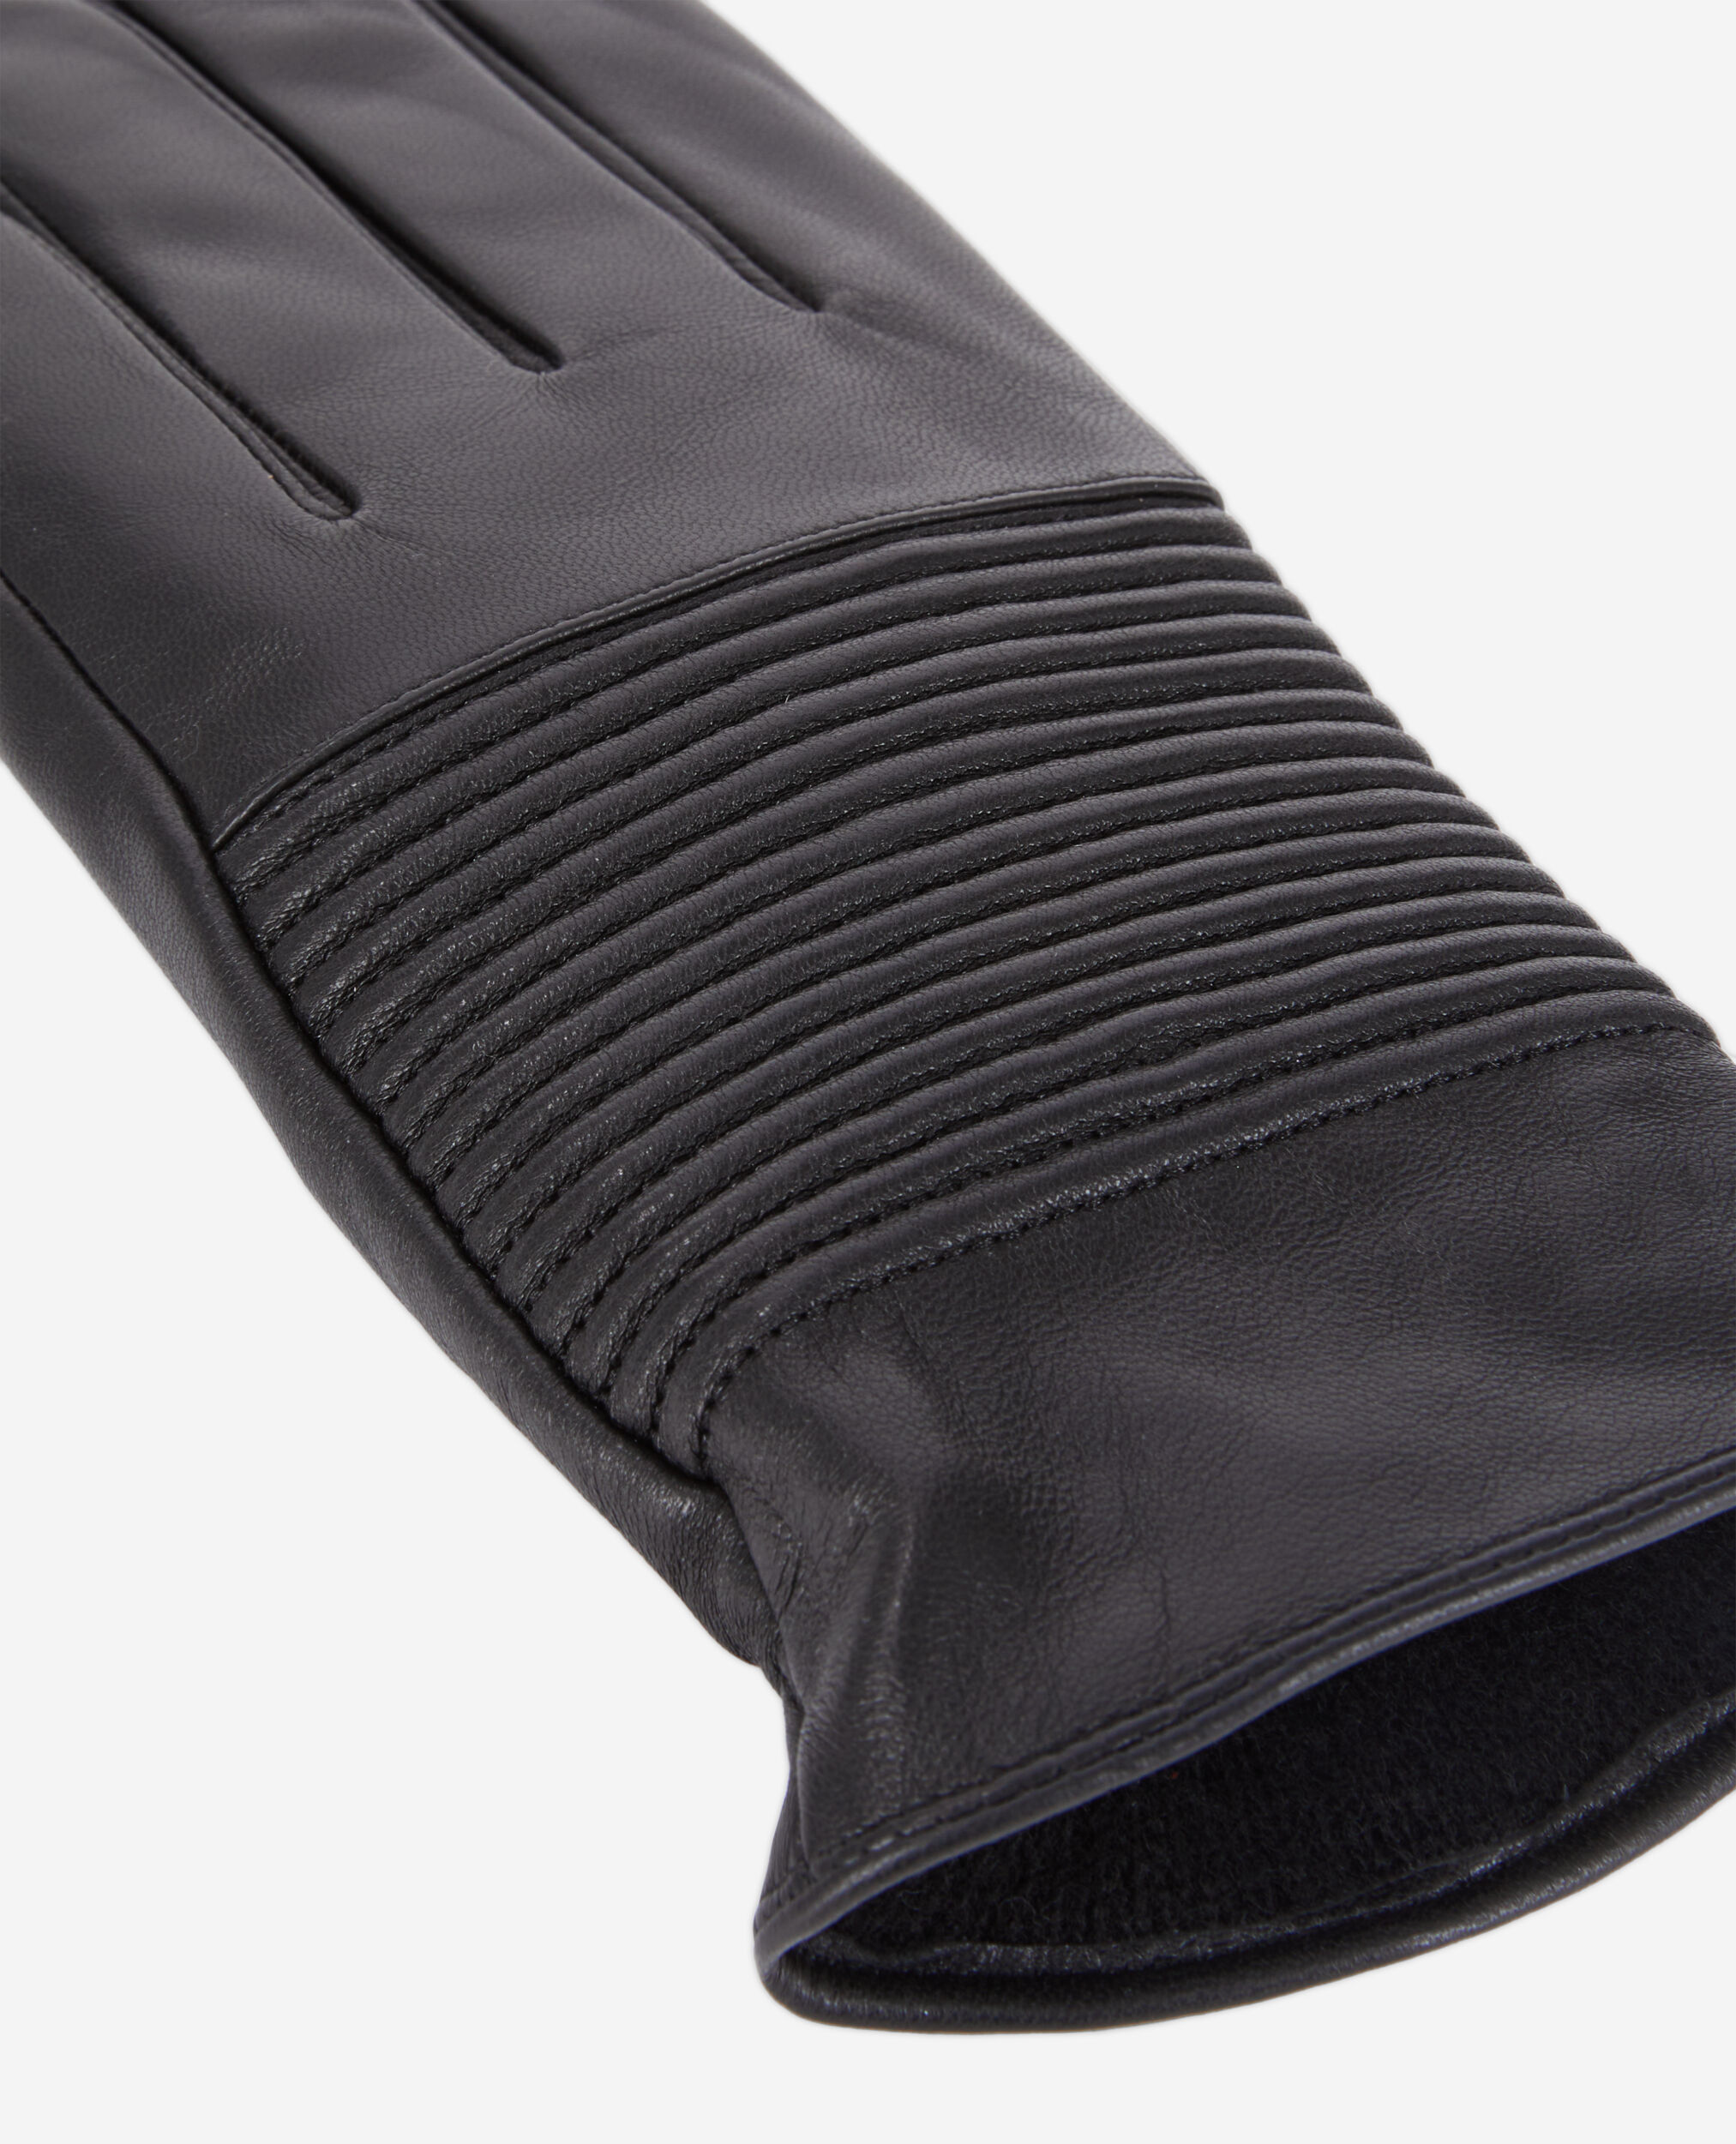 Schwarze Handschuhe Herren aus geripptem Leder, BLACK, hi-res image number null